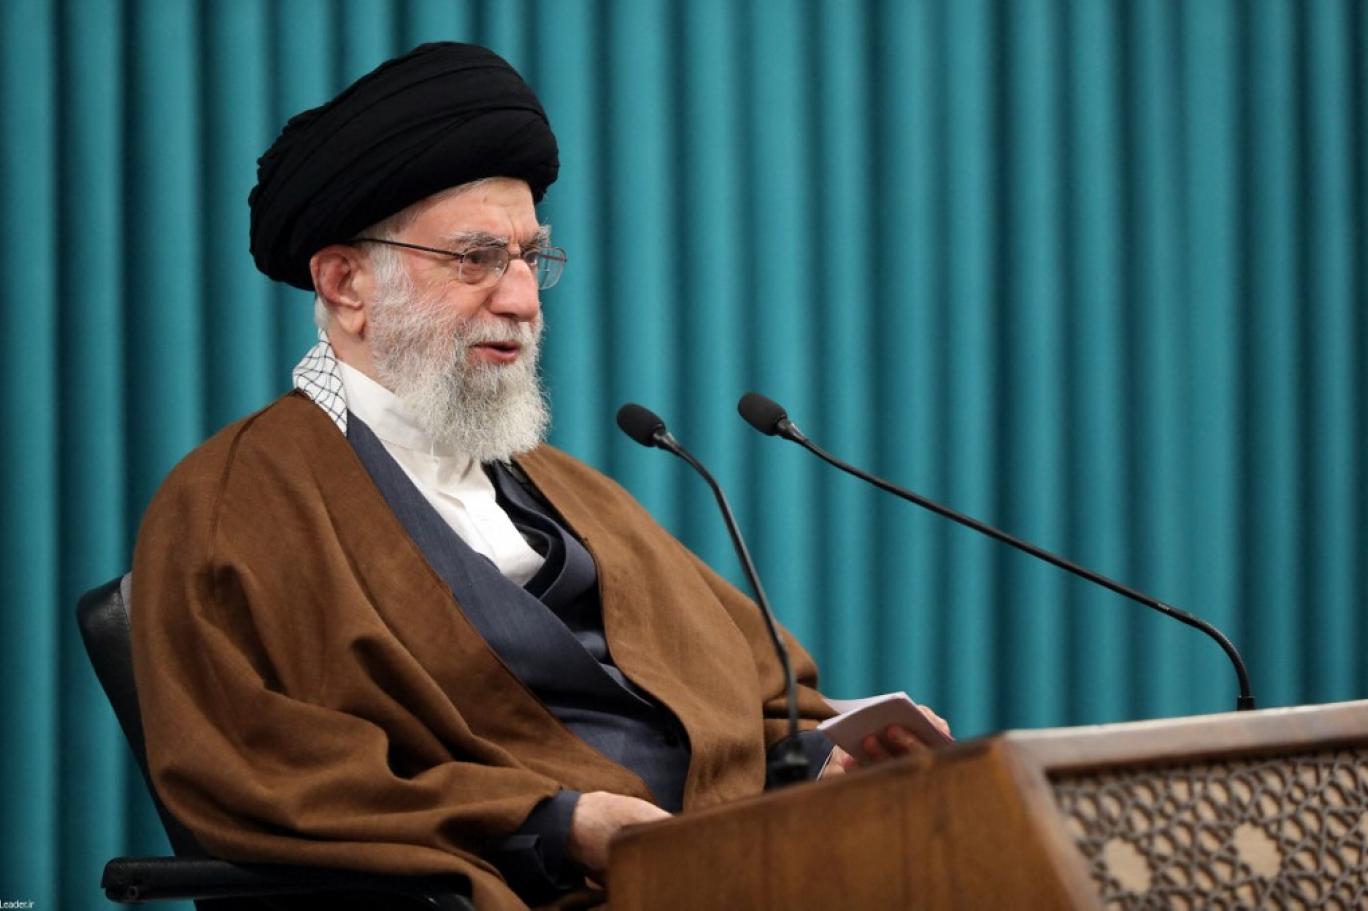 خامنئي يعلق على سقوط طائرة الرئيس الإيراني: "أعمال البلاد ستستمر بشكل منظم وجدي"